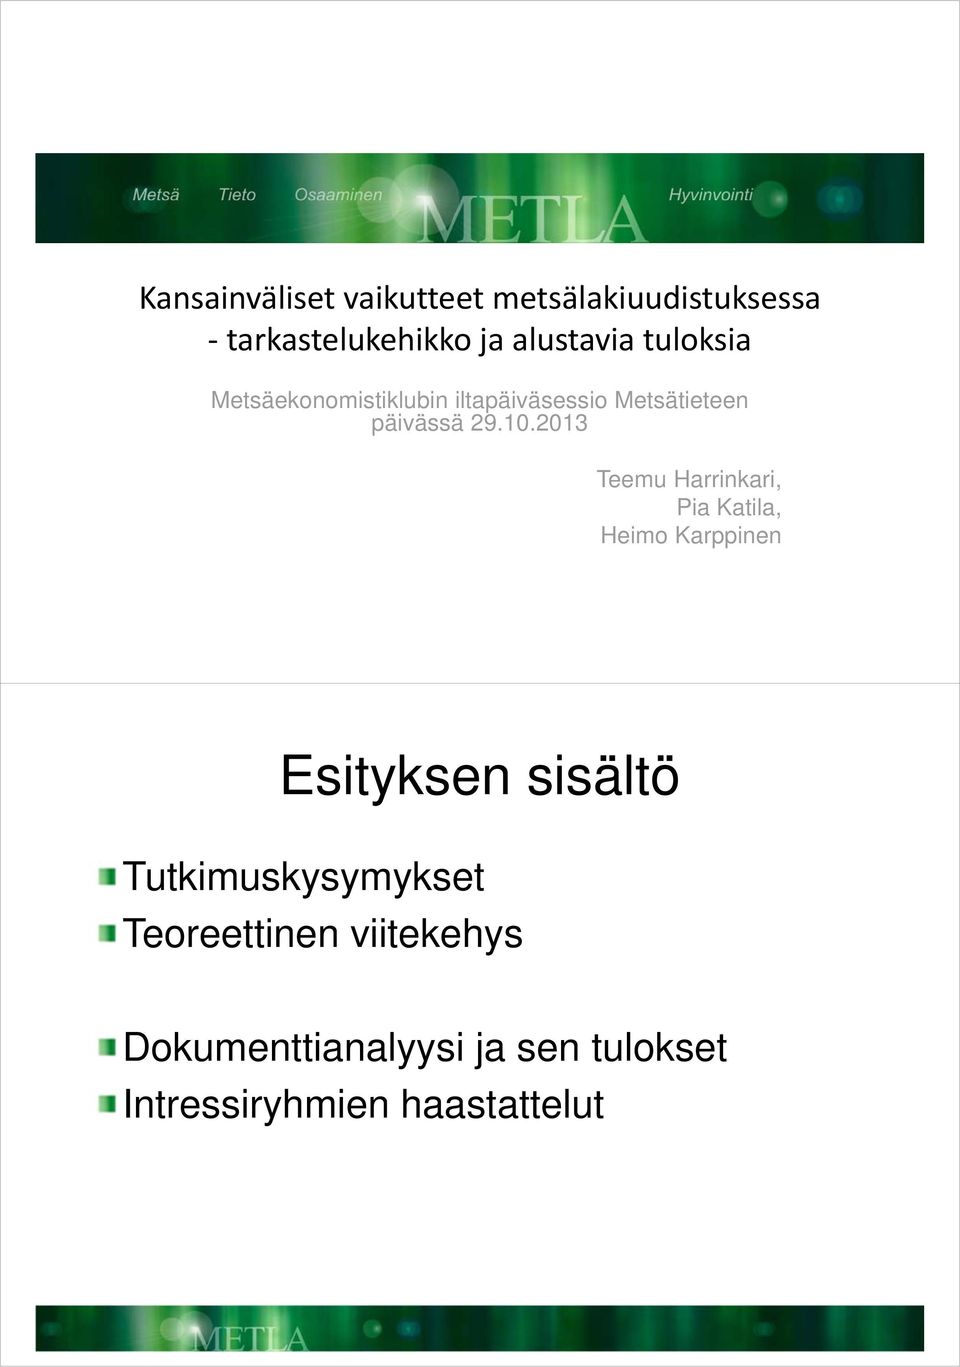 2013 Teemu Harrinkari, Pia Katila, Heimo Karppinen Esityksen sisältö